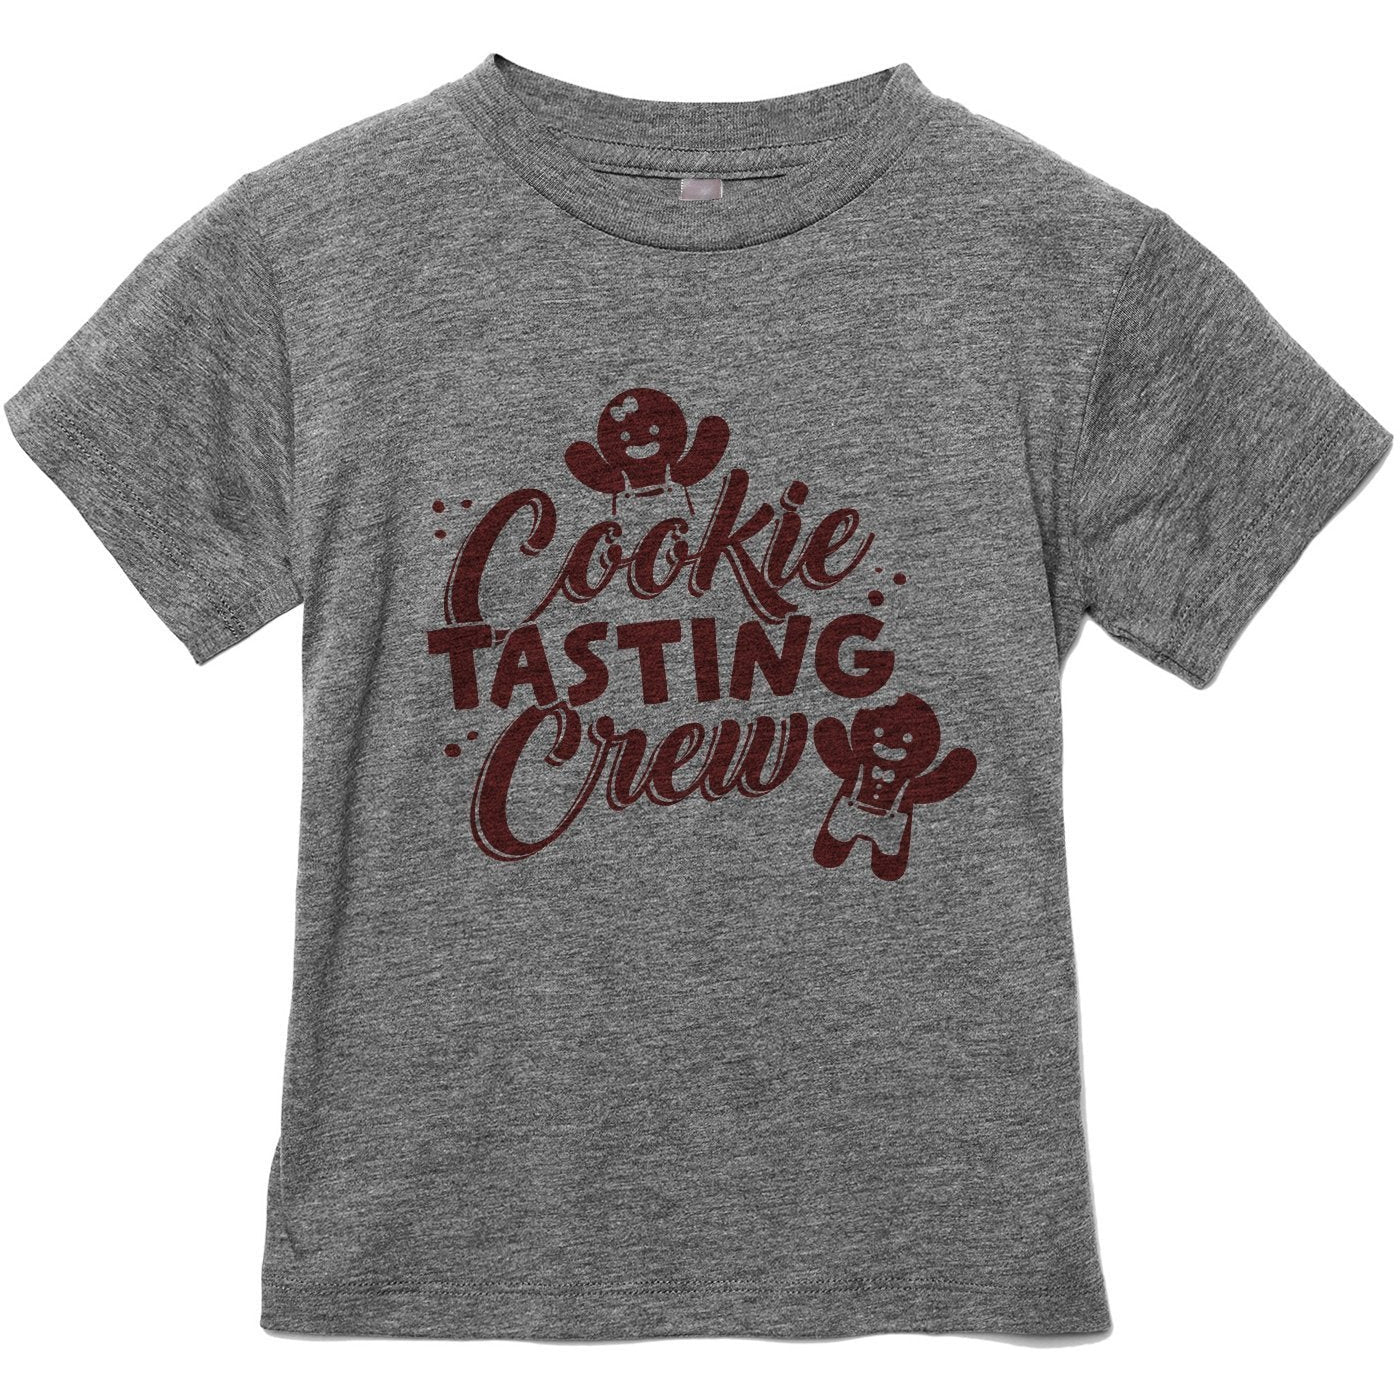 Cookie Tasting Crew